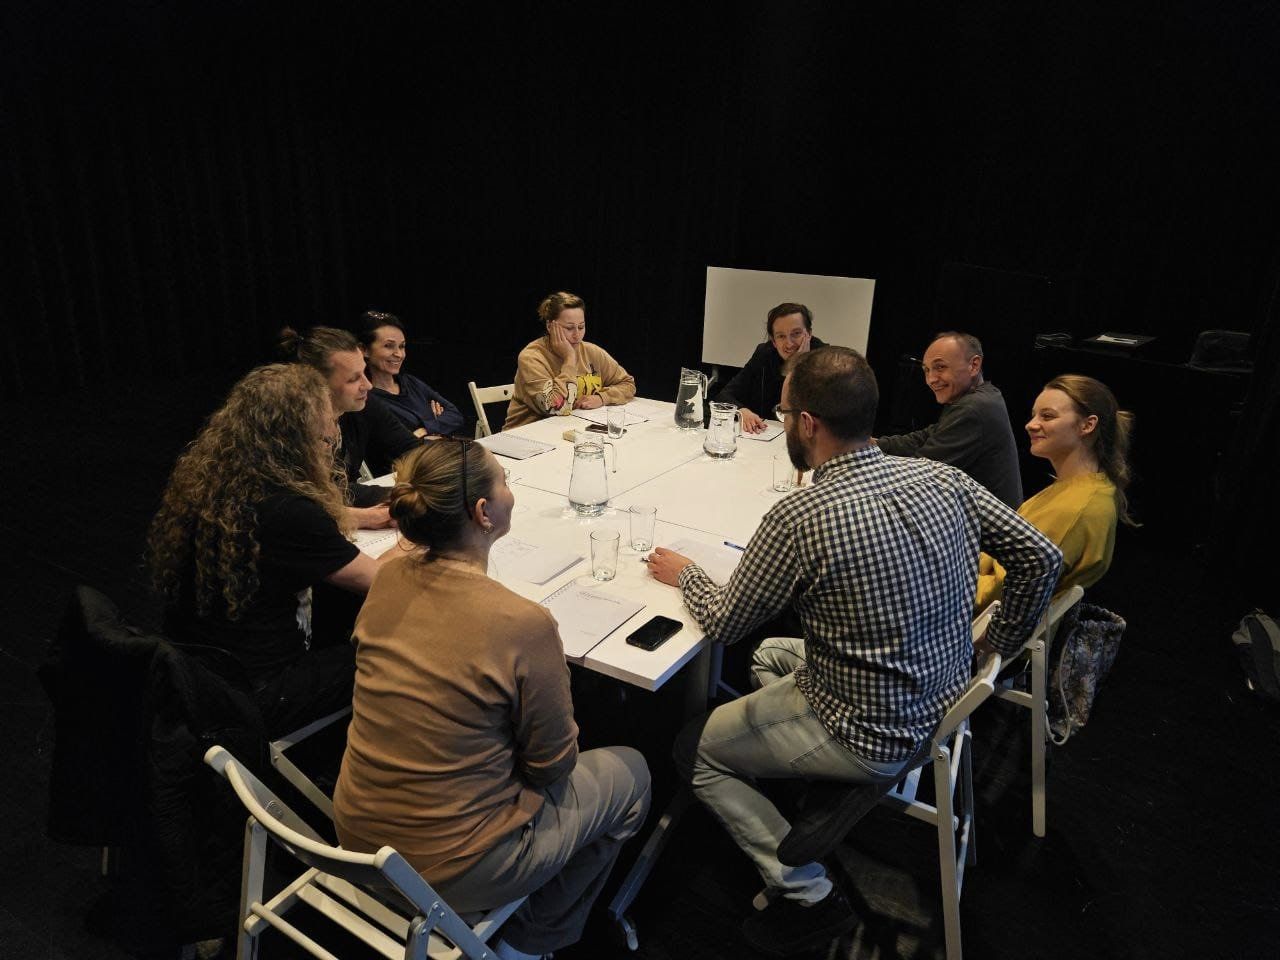 Aktorzy Teatru Baj zebrani przy dużym białym stole omawiają wraz z reżyserem, producentem i inspicjentką przygotowania do najnowszej premiery pt. Czerwony Kapturek. Trwa pierwsza próba czytana.